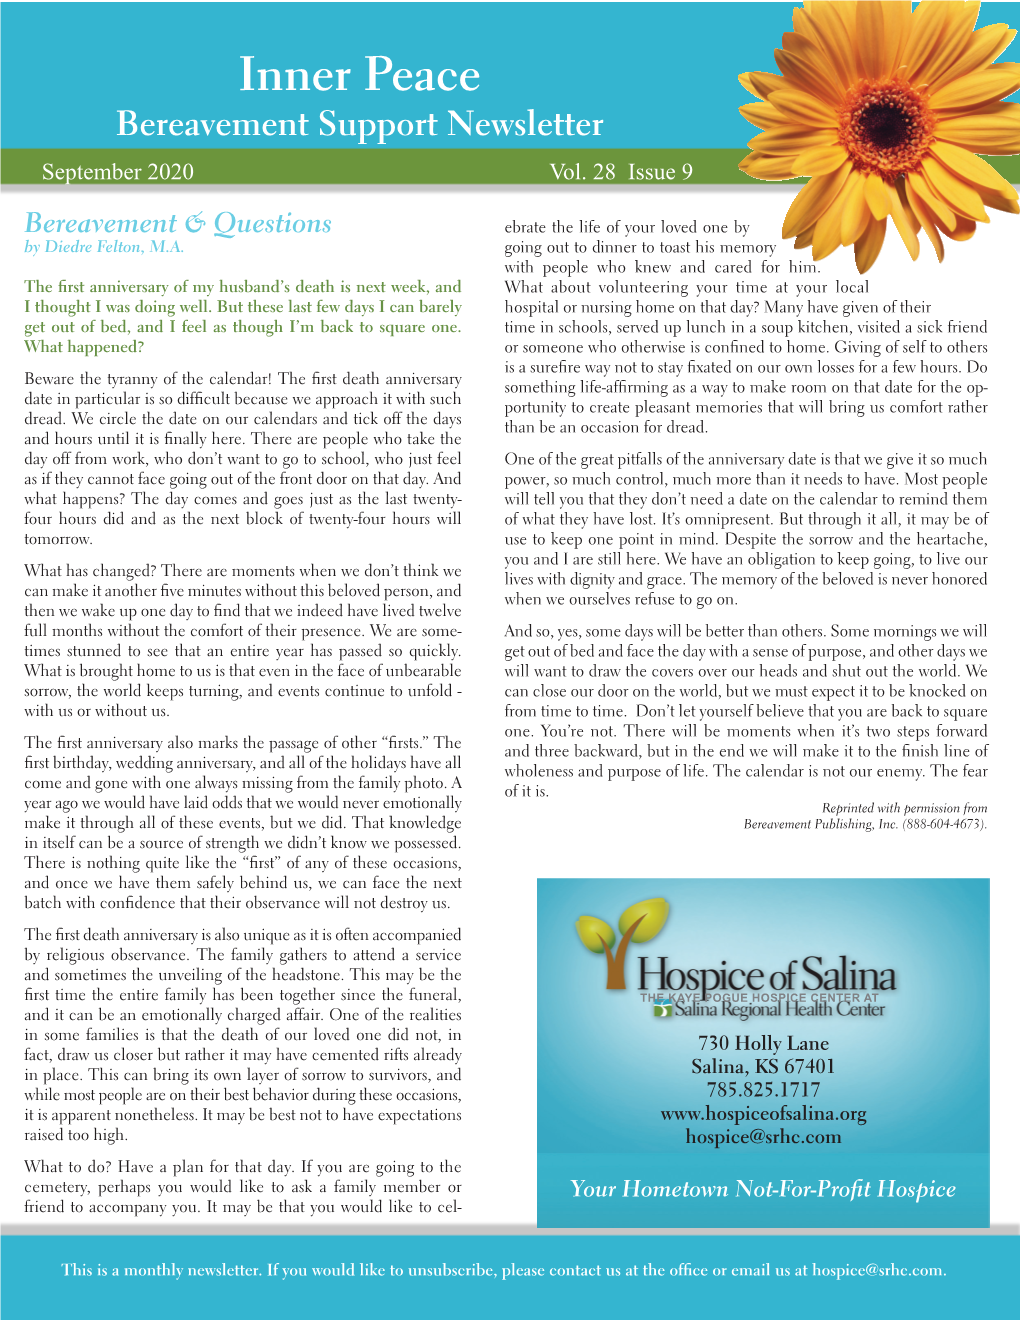 Inner Peace Bereavement Support Newsletter September 2020 Vol